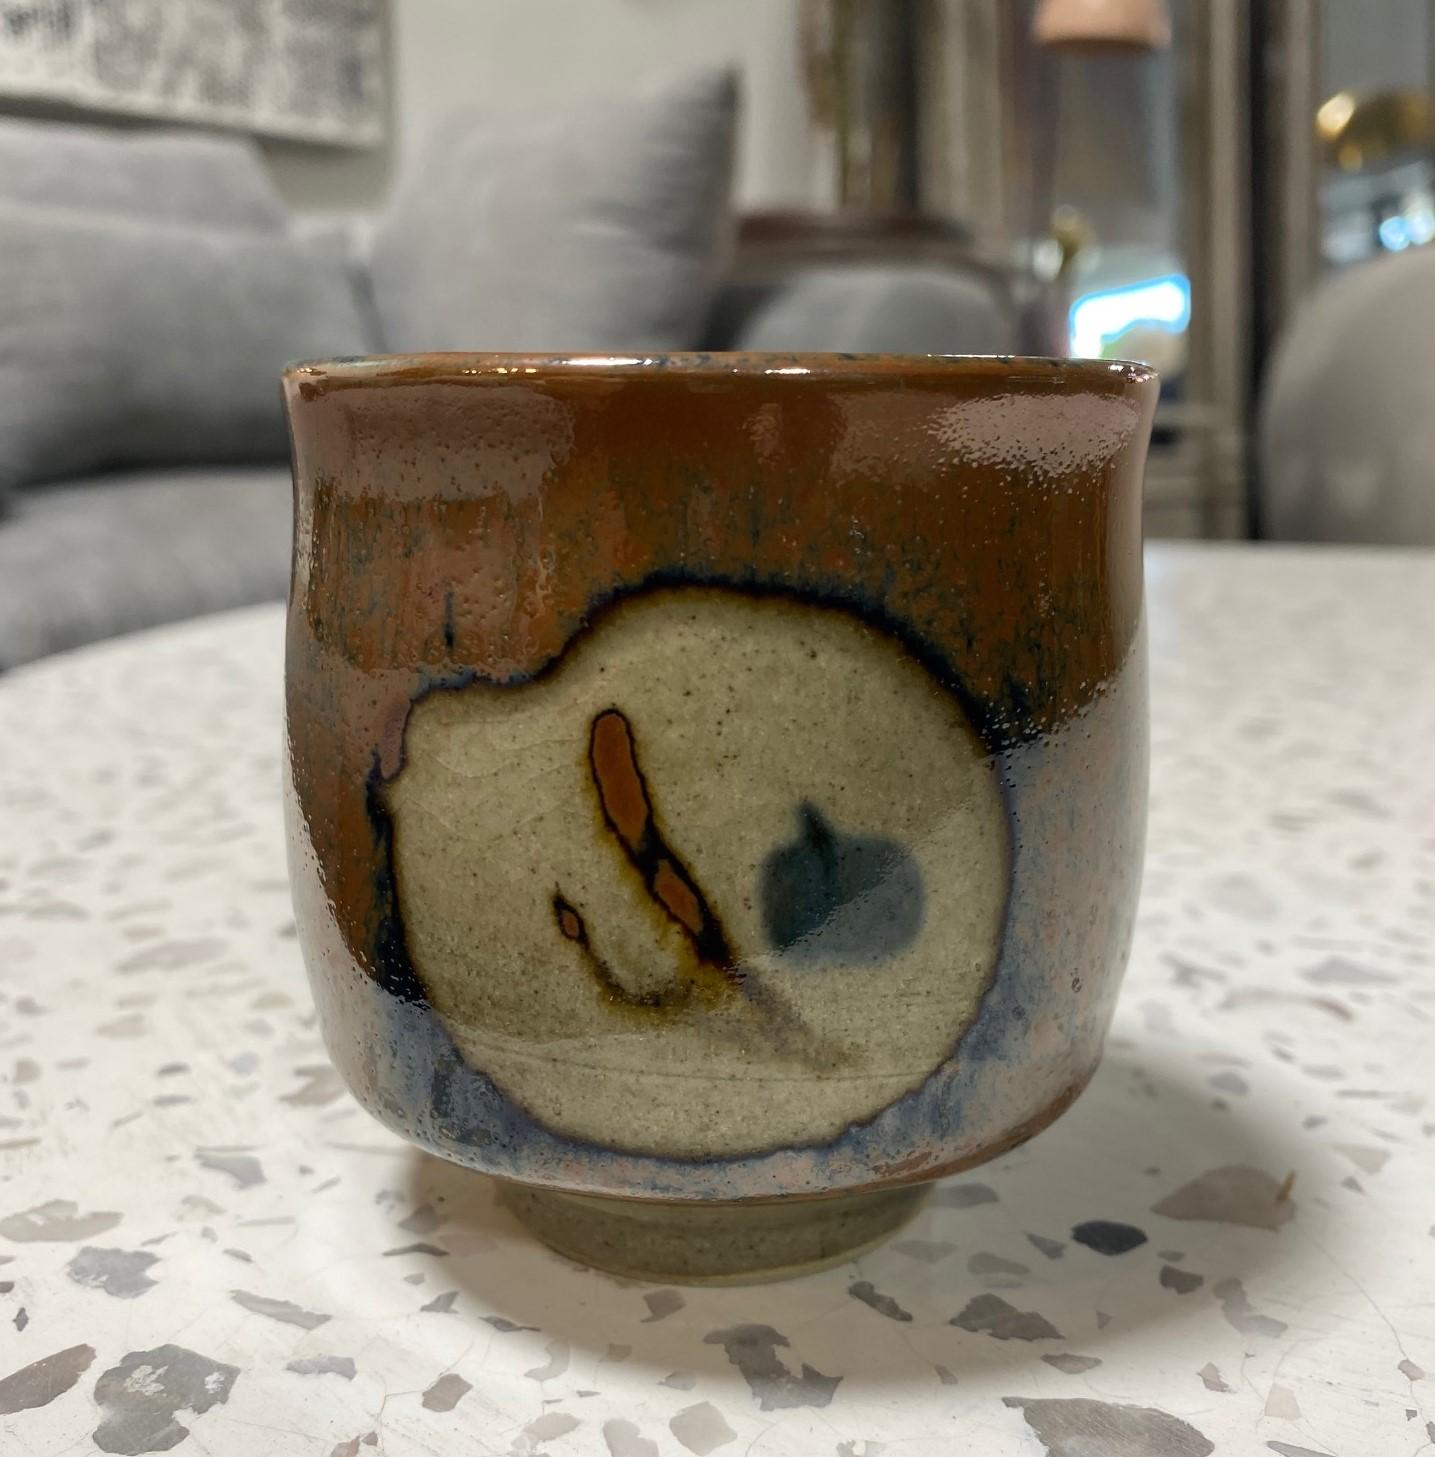 Eine exquisite, wunderschön gearbeitete und wunderbar gestaltete Yunomi-Tasse des japanischen Töpfermeisters Shoji Hamada mit seiner wachsresistenten Technik und der begehrten reichen Kaki-Glasur auf Mashiko-Steinzeugkeramik. Ein einzigartiges Werk.